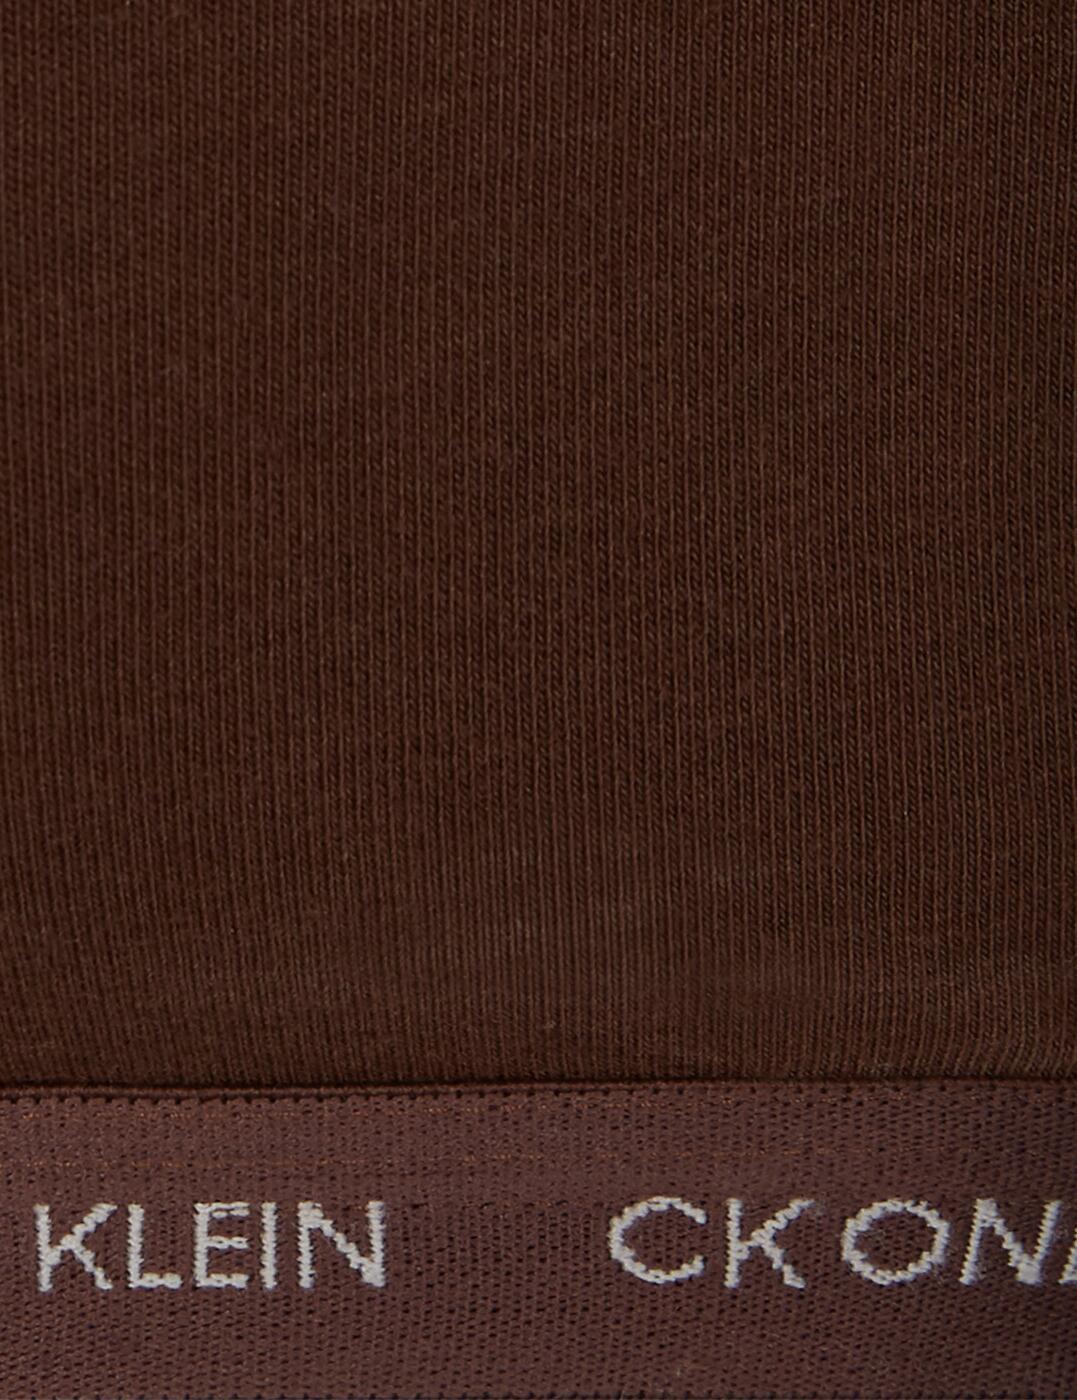 000QF6814E Calvin Klein CK One Cotton Plus Size Unlined Bralette (2PK)